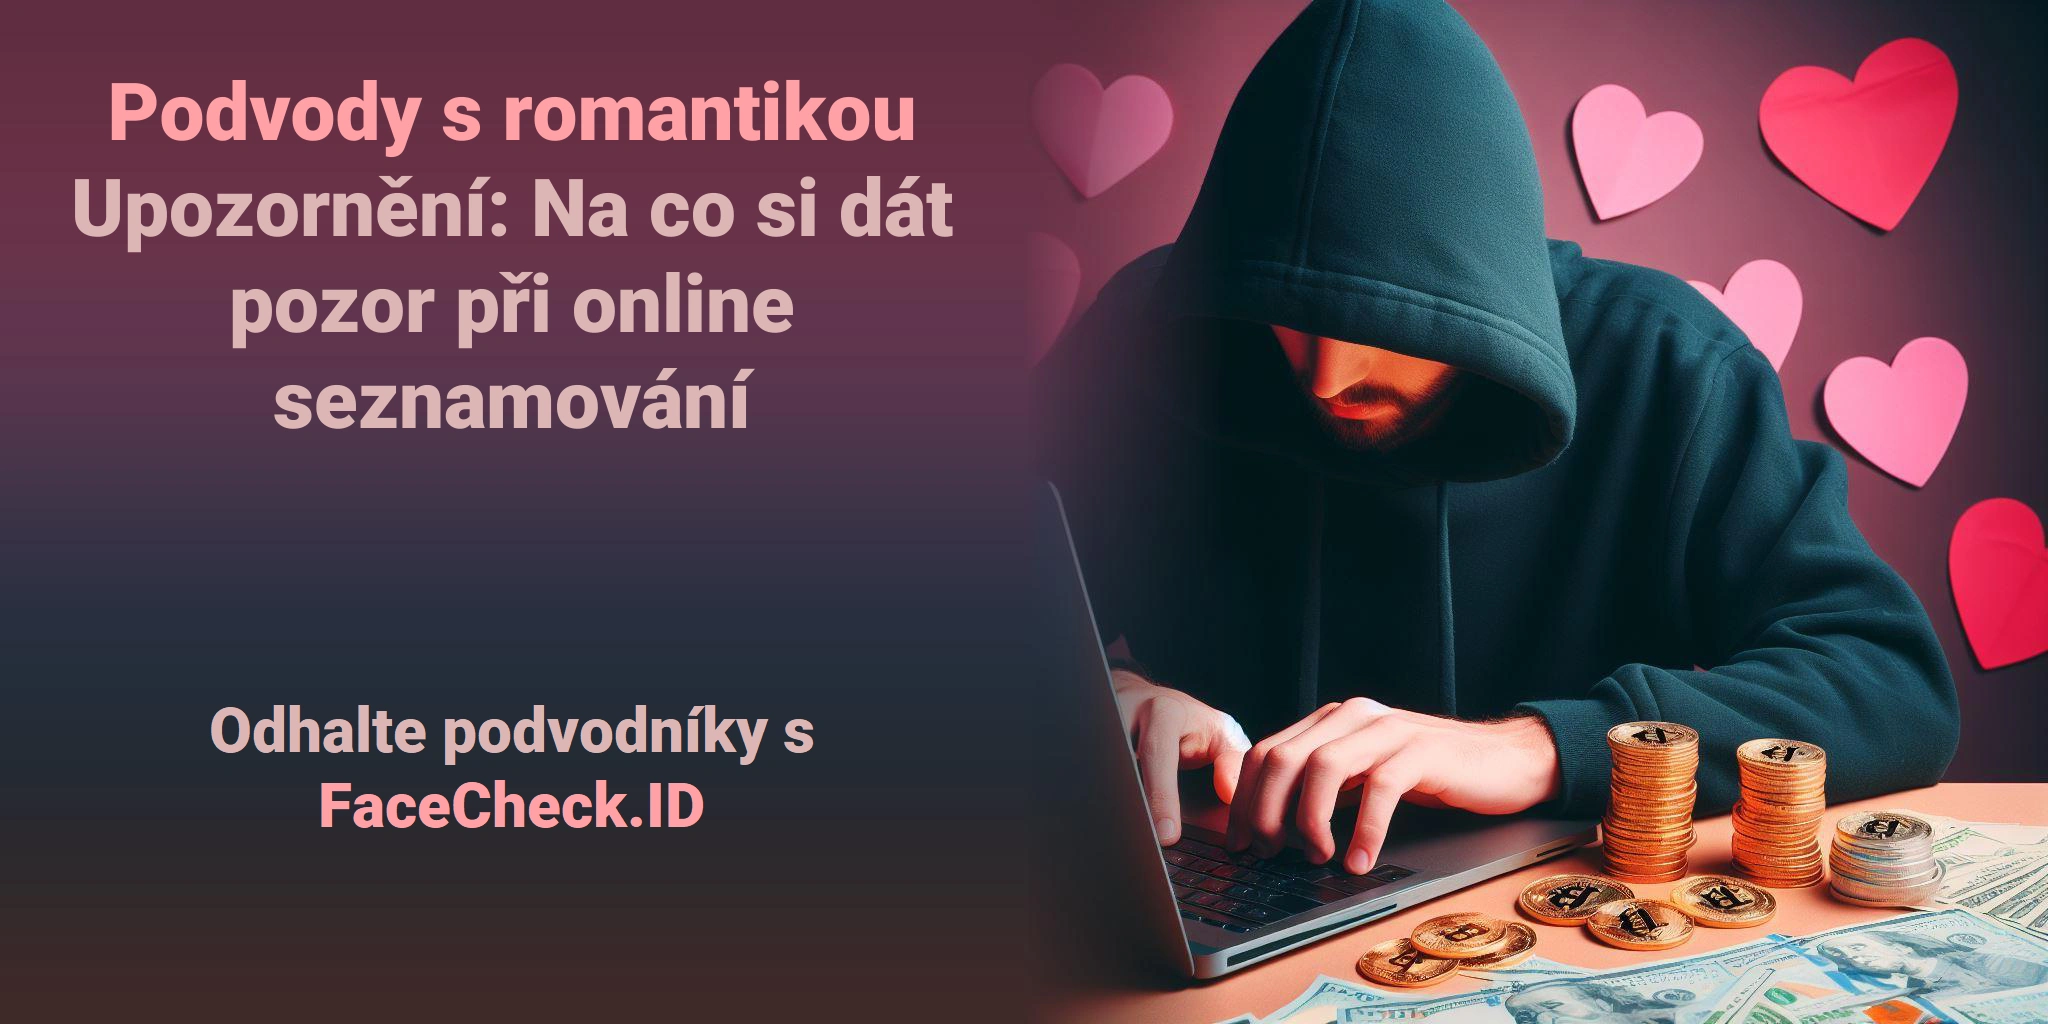 Podvody s romantikou Upozornění: Na co si dát pozor při online seznamování Odhalte podvodníky s FaceCheck.ID